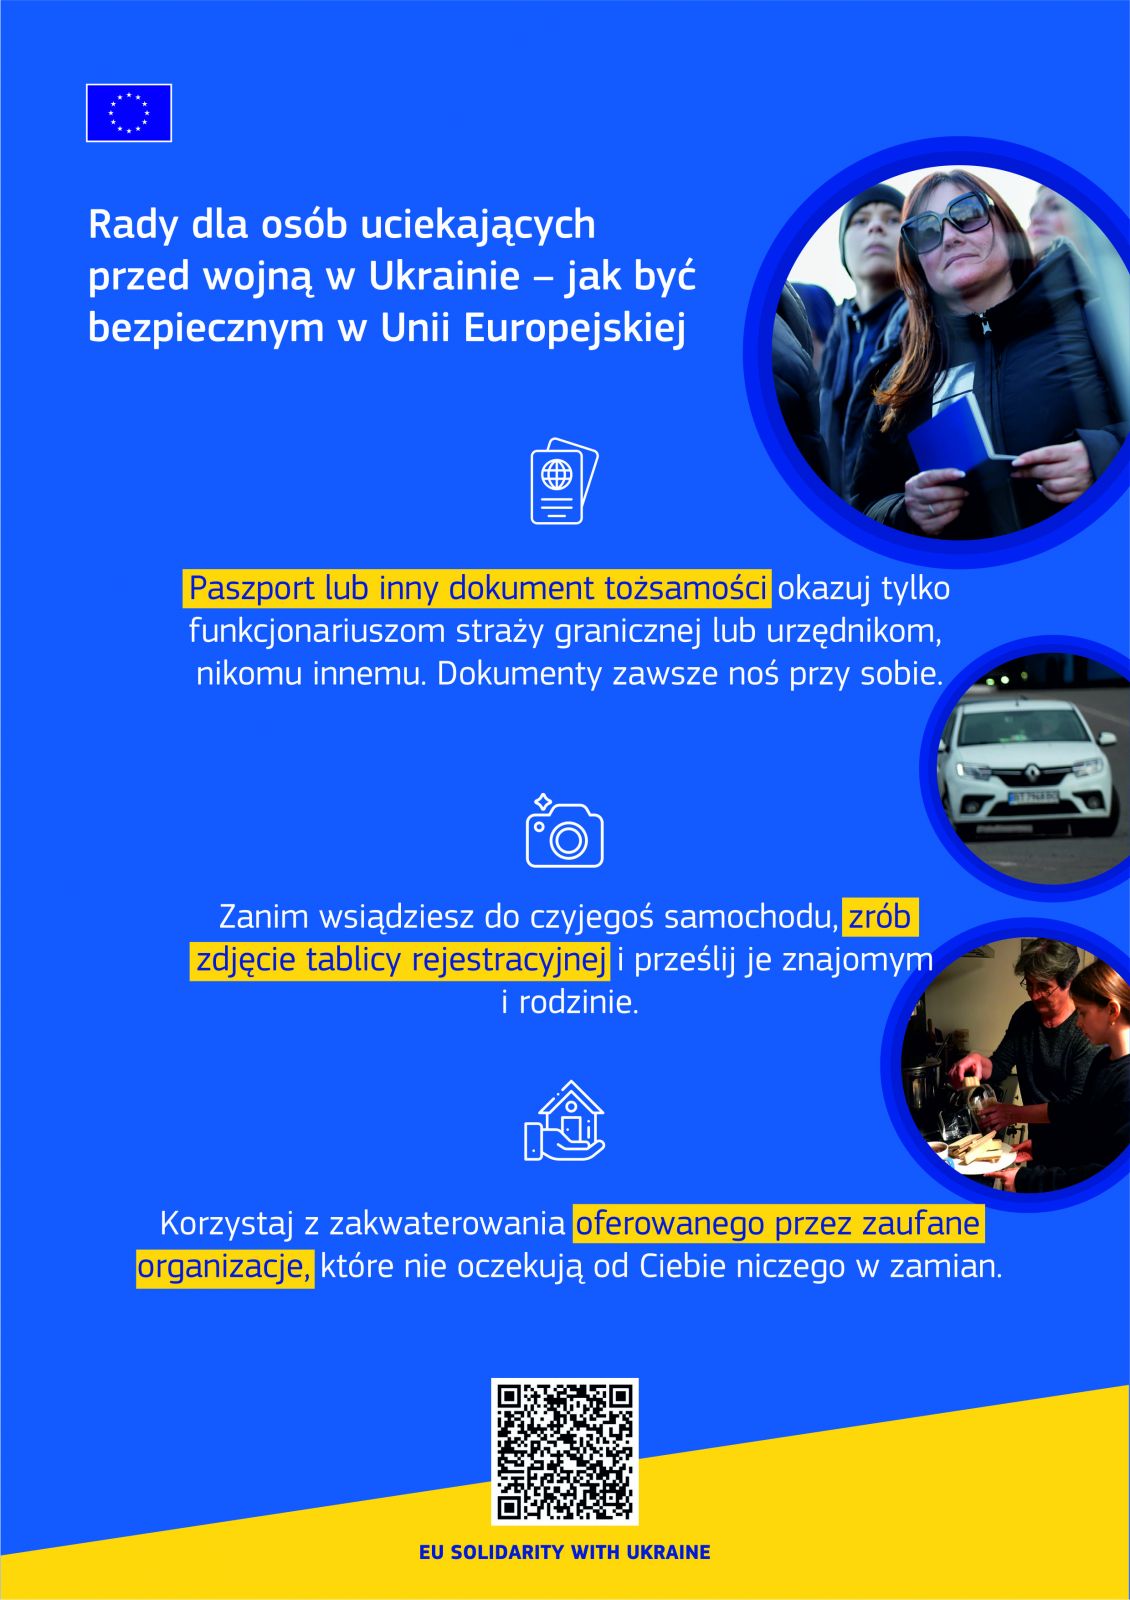 Rady dla osób uciekających przed wojną w Ukrainie w języku polskim